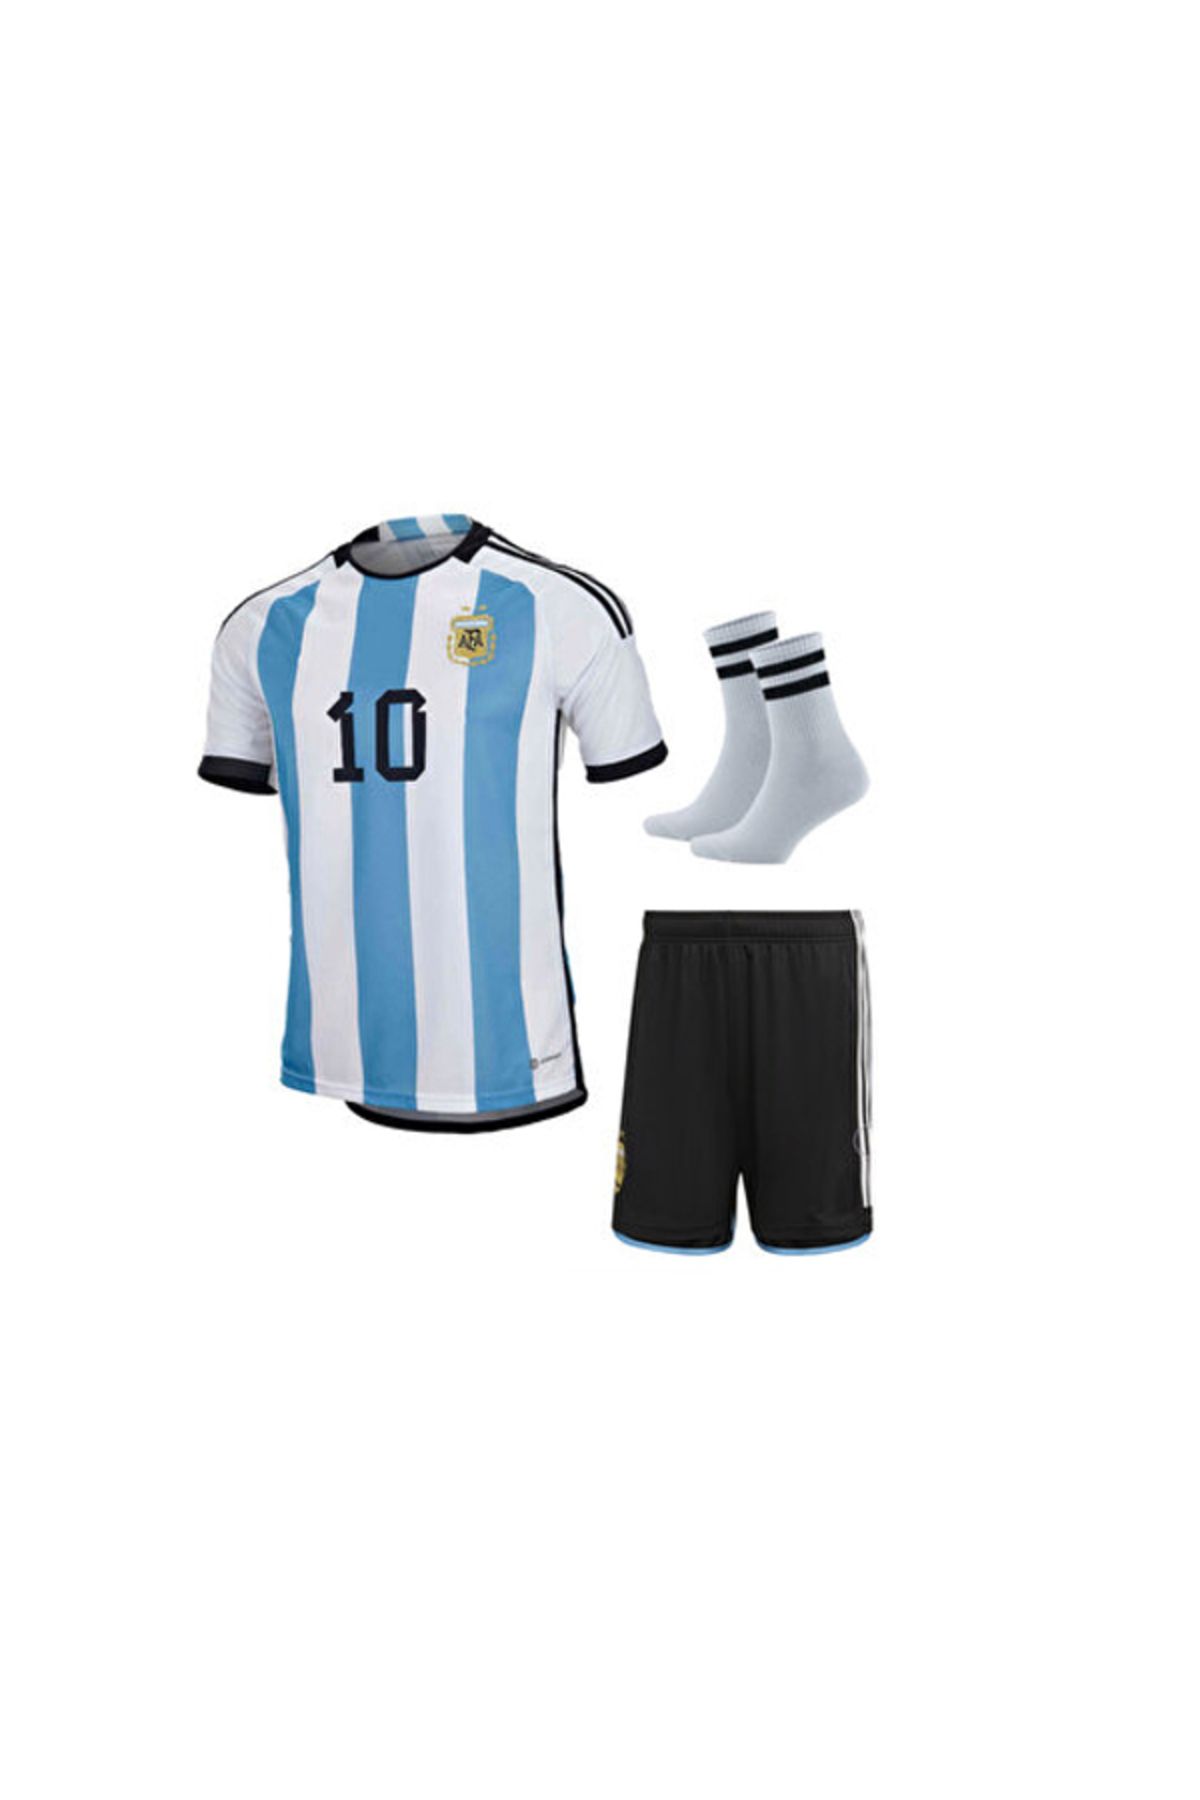 ZİLONG Arjantin Messi Çocuk Forması